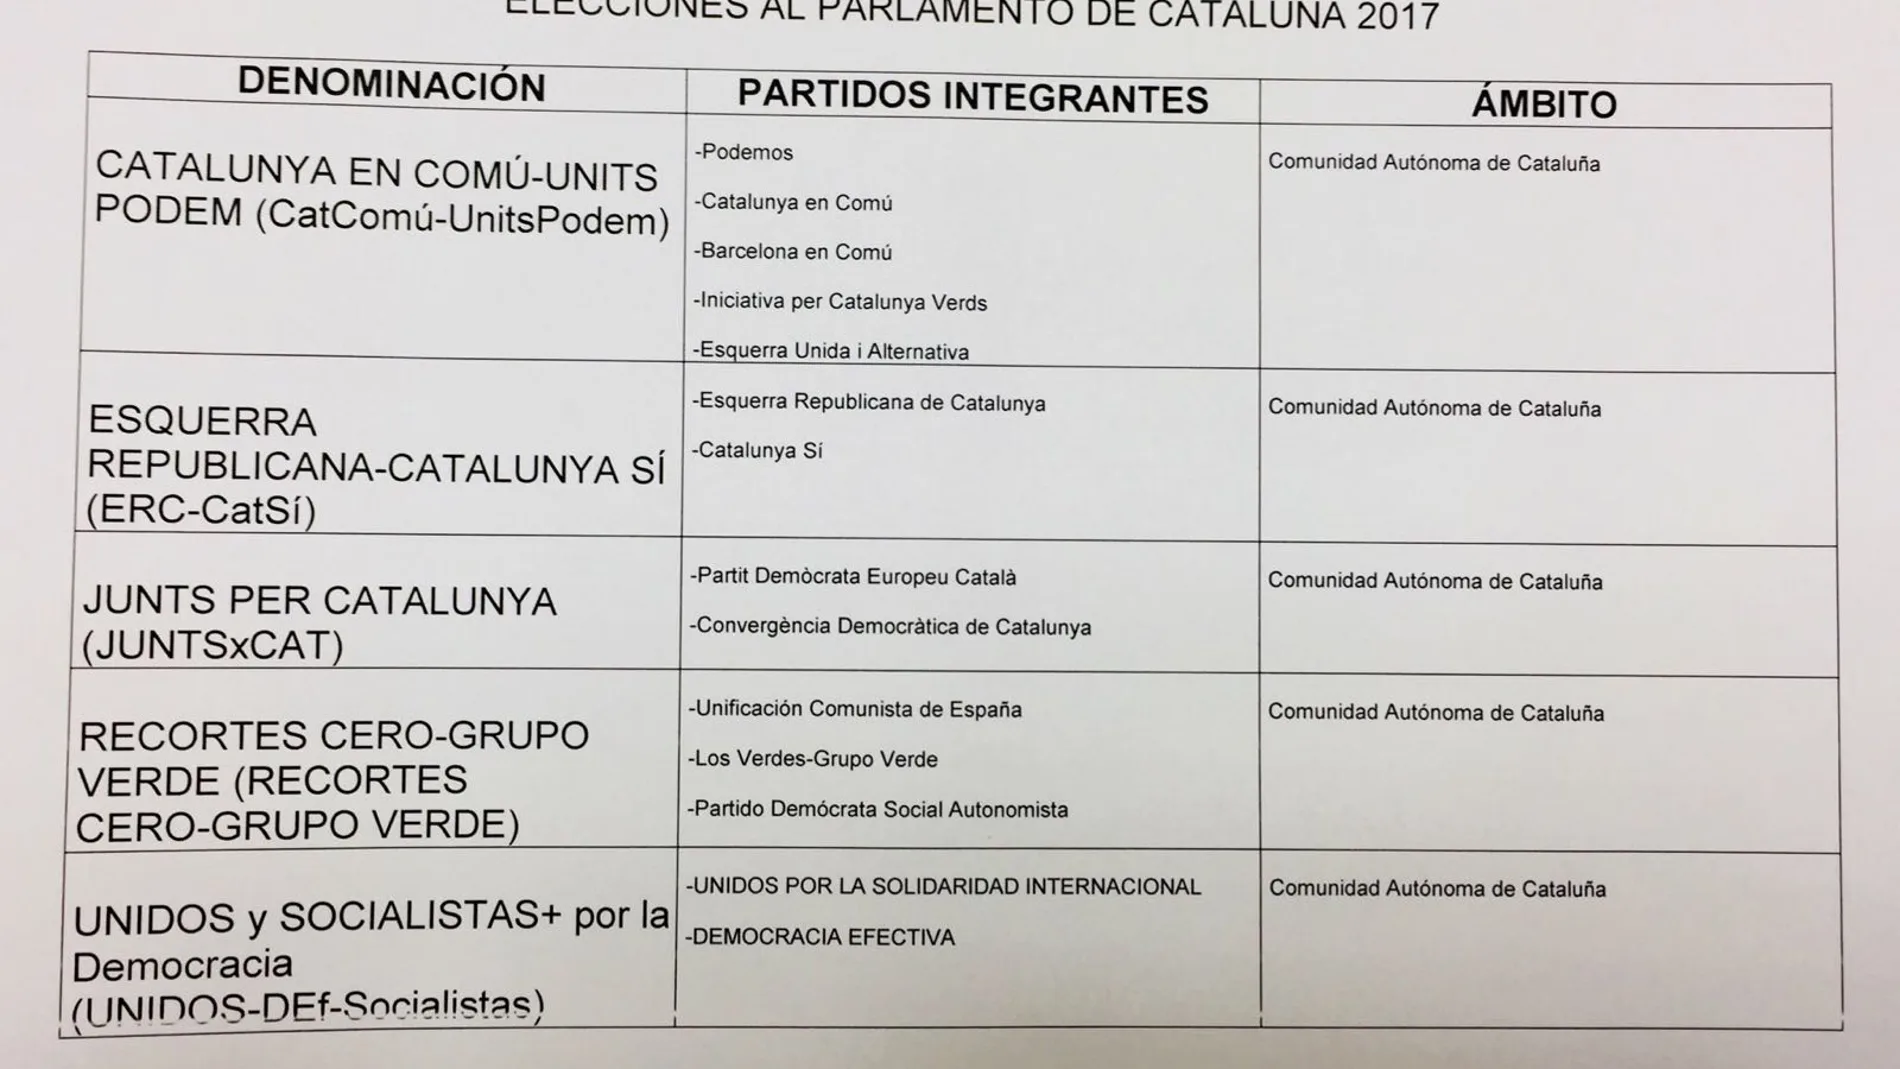 Coaliciones para las elecciones del 21-D en Cataluña